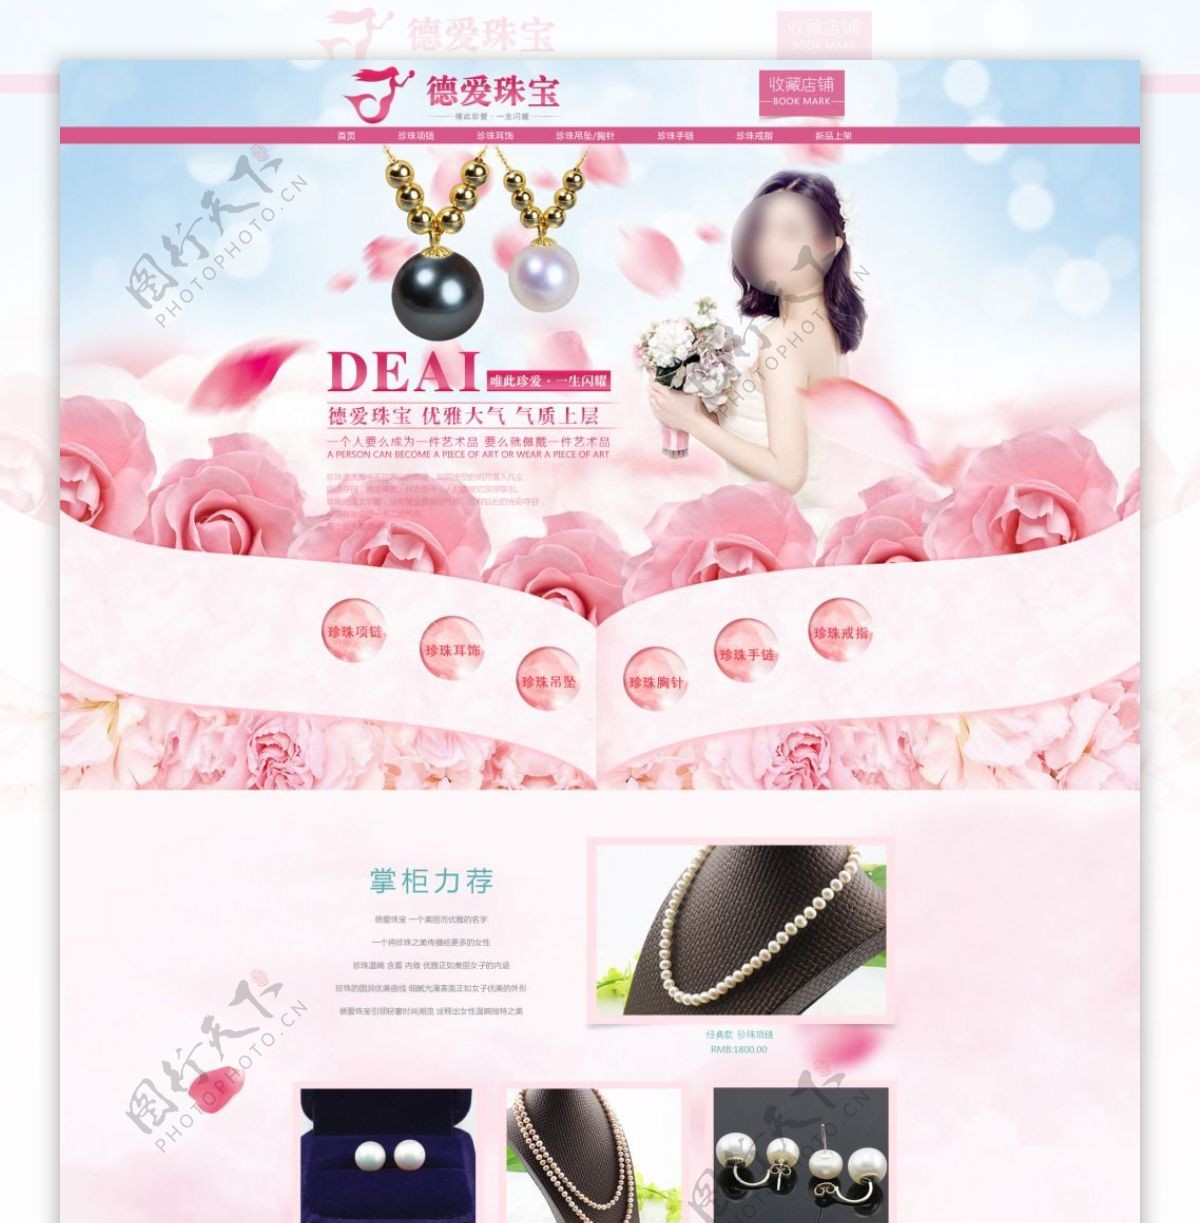 三八妇女节购物狂欢珍珠首饰首页设计